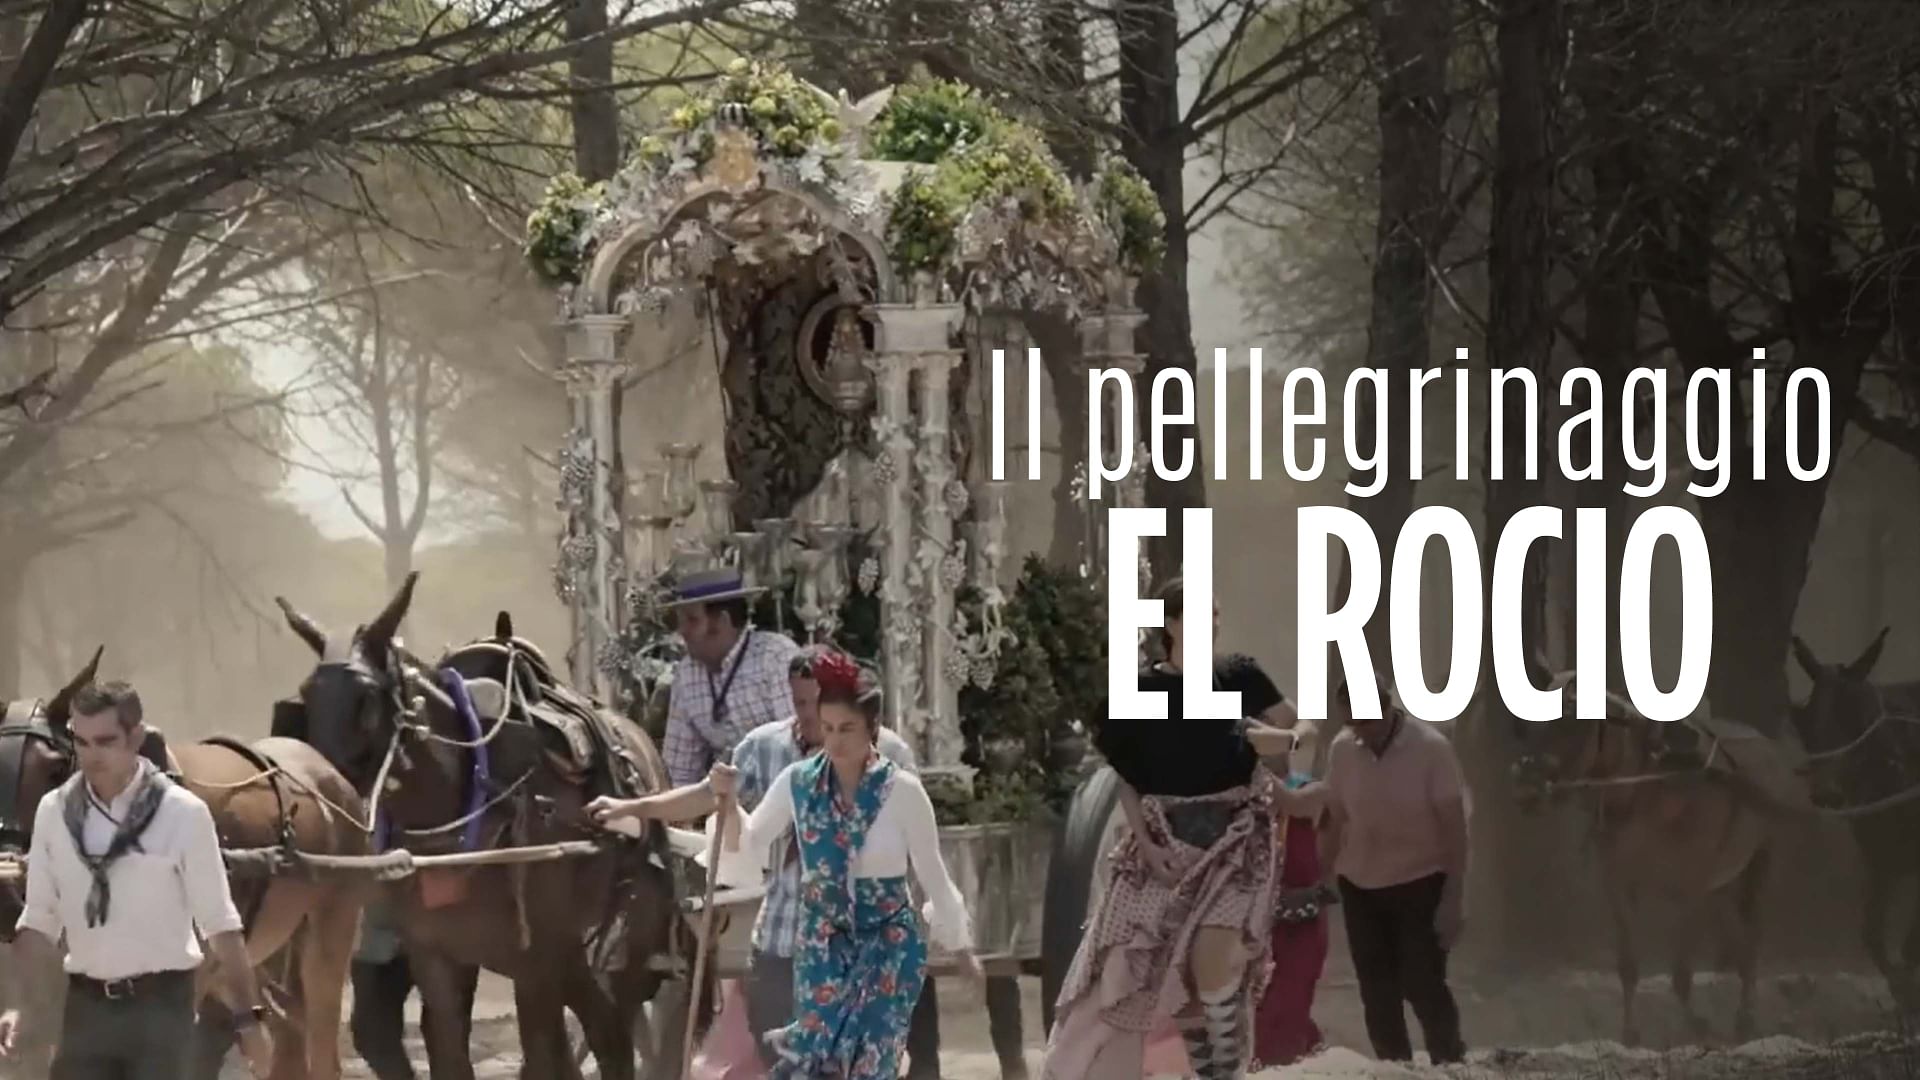 Re: sguardi sulla società - El Rocío, un pellegrinaggio andaluso